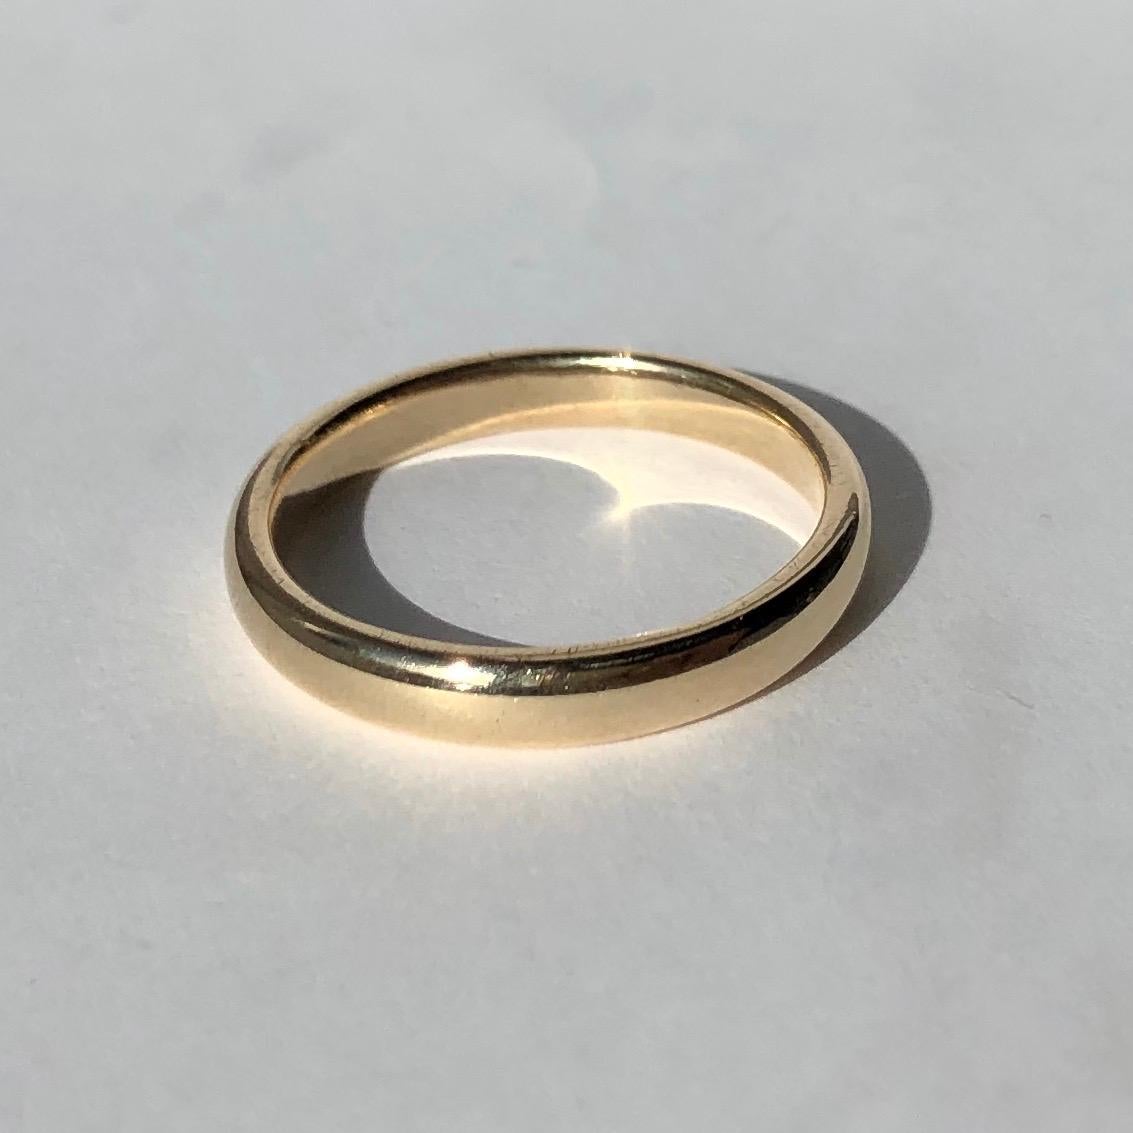 Ein Band aus 9-karätigem Gold ist der perfekte klassische Ehering oder ein großartiges Stück für den täglichen Gebrauch. Hergestellt in London, England. 

Ring Größe: M oder 6 1/4 
Bandbreite: 2mm 

Gewicht: 2,46g